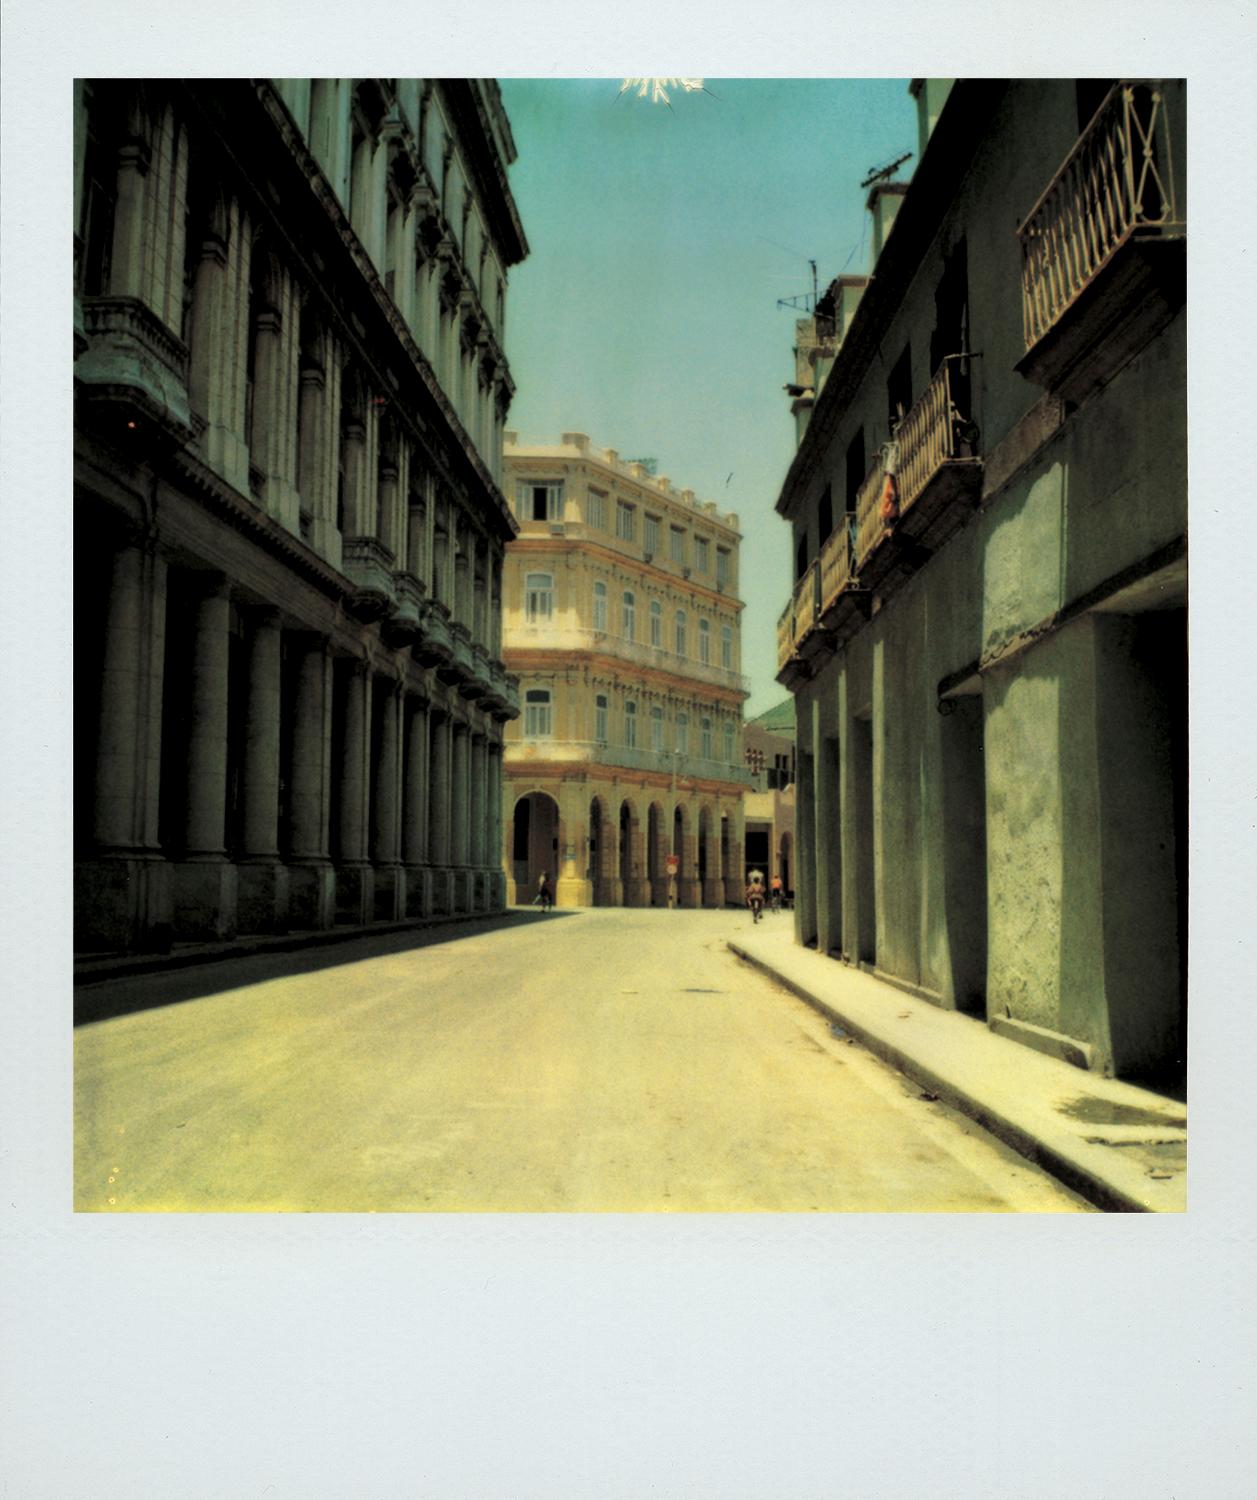 "Obispo Street #1", Cuba, 1994